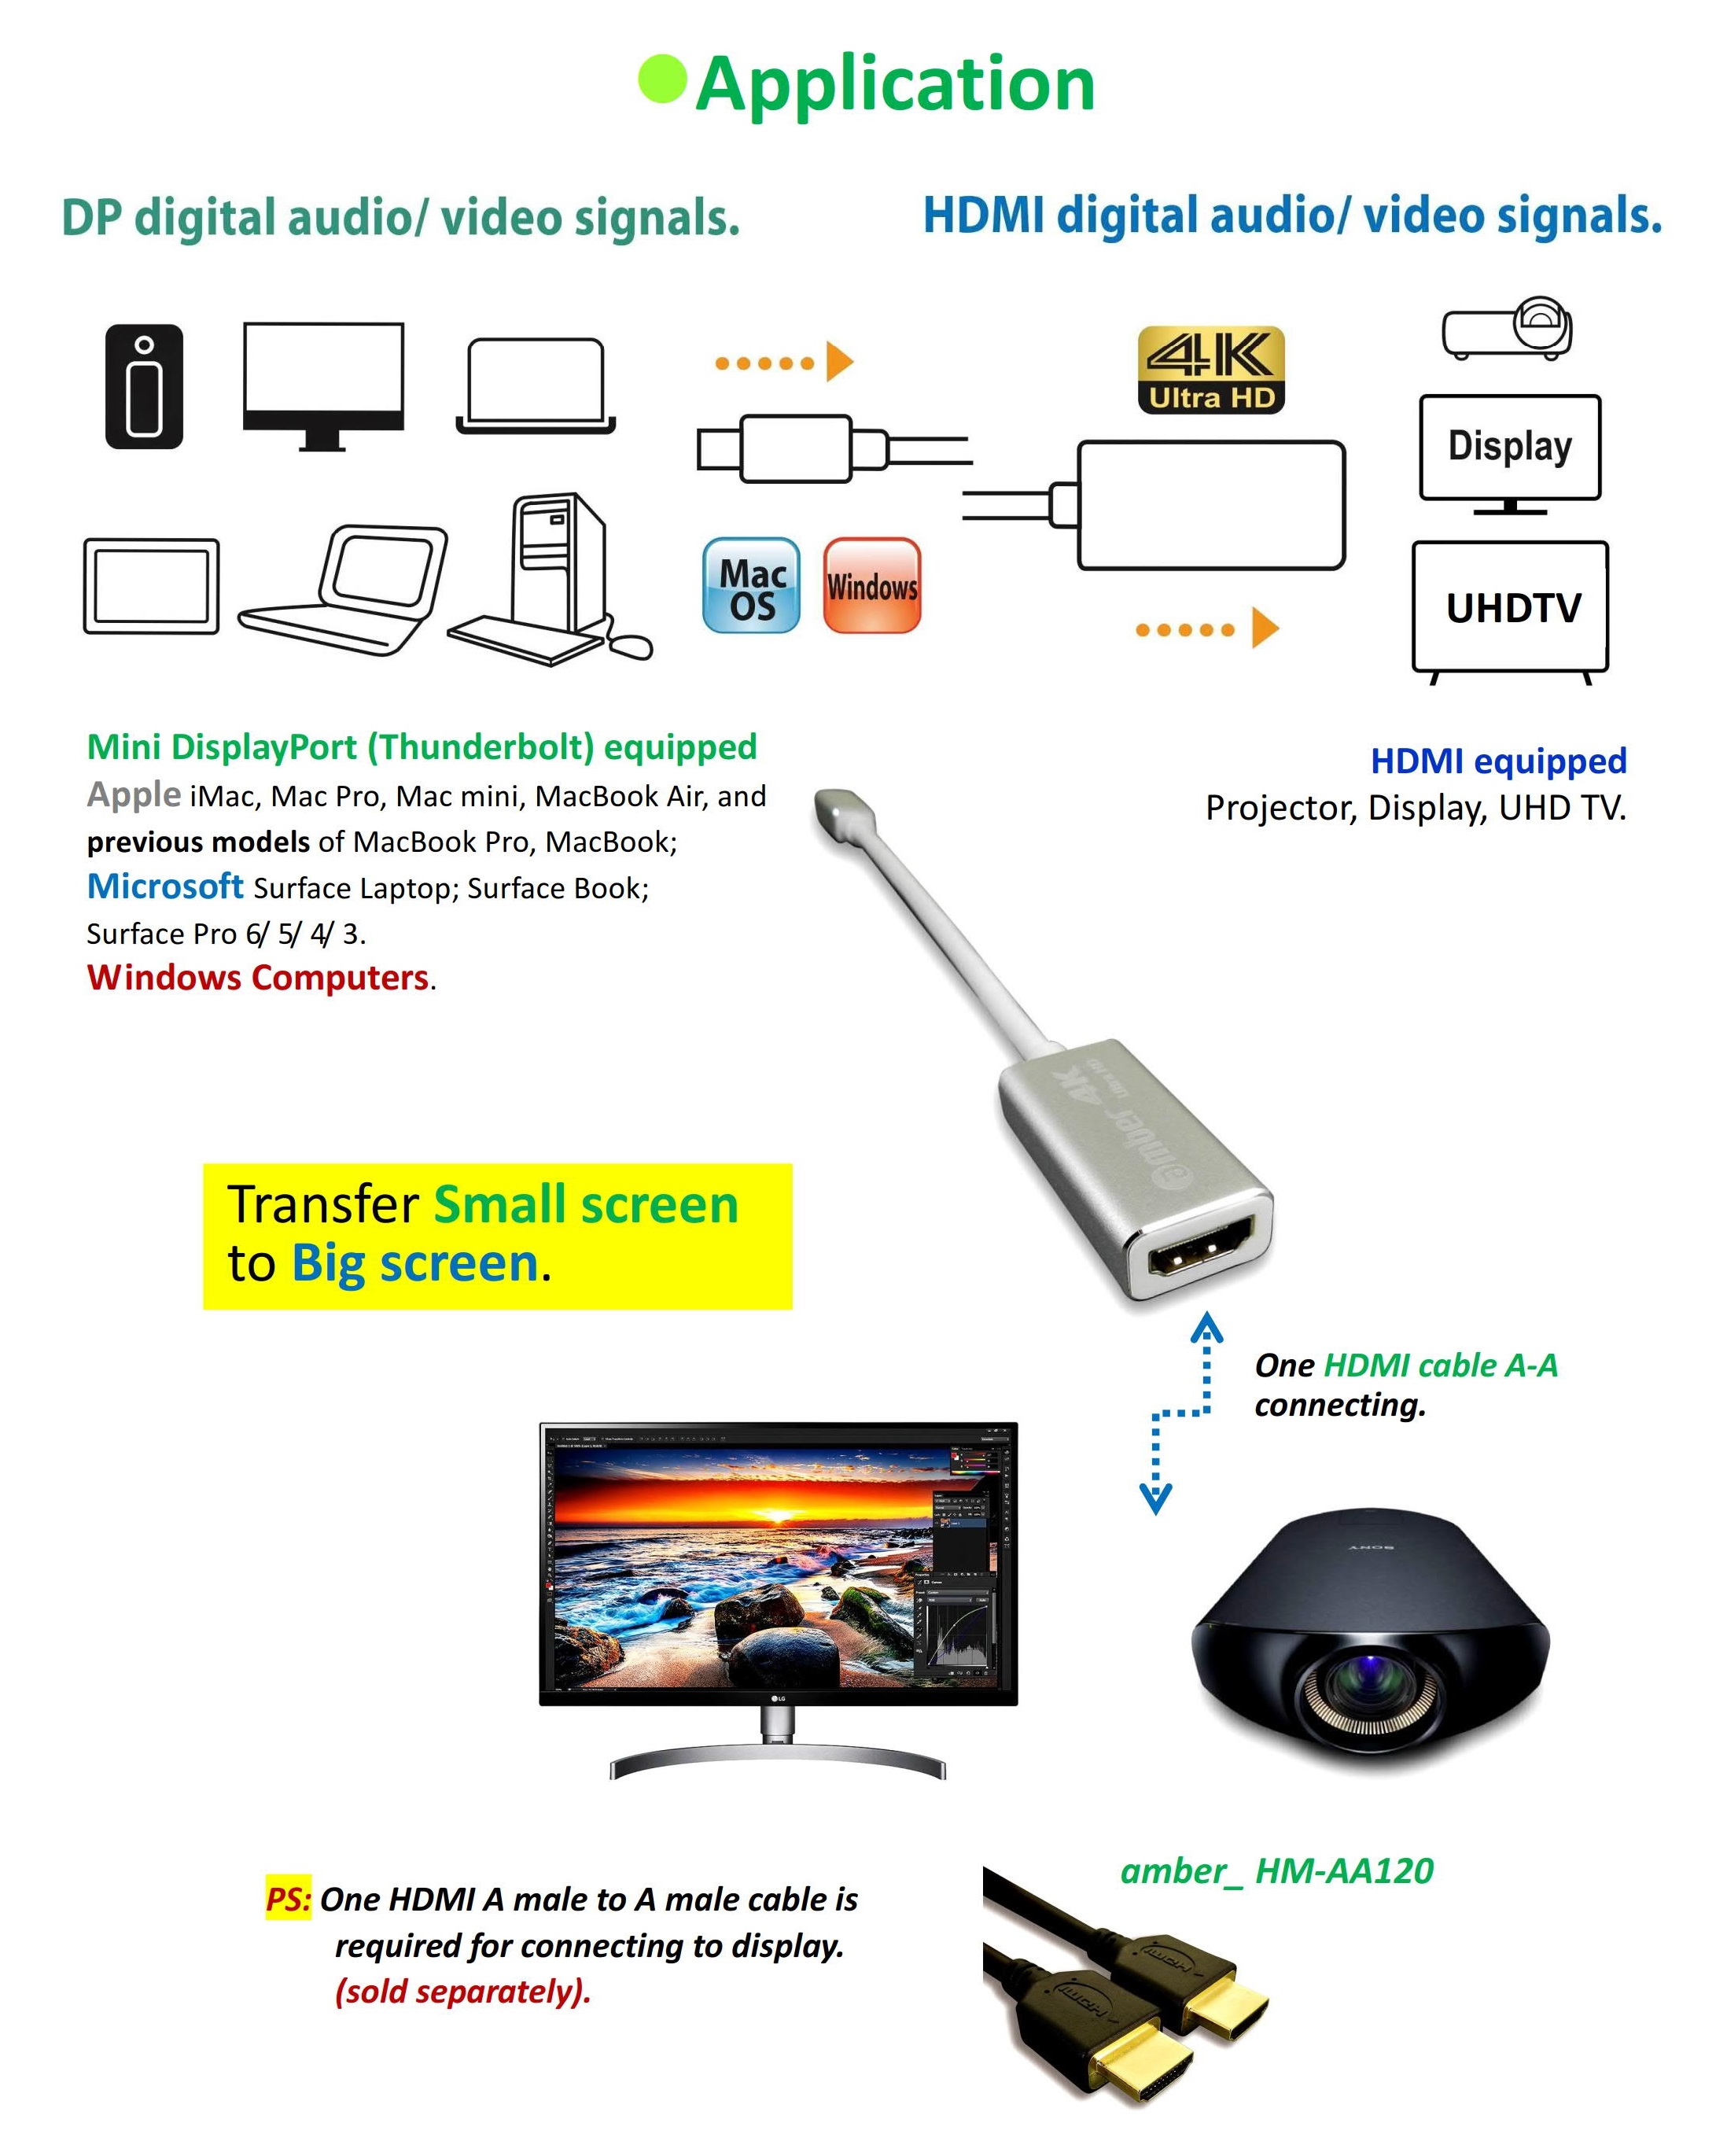 Adaptador Macbook Mini Display - Thunderbolt A Tv Hdmi 4K Ultra HD